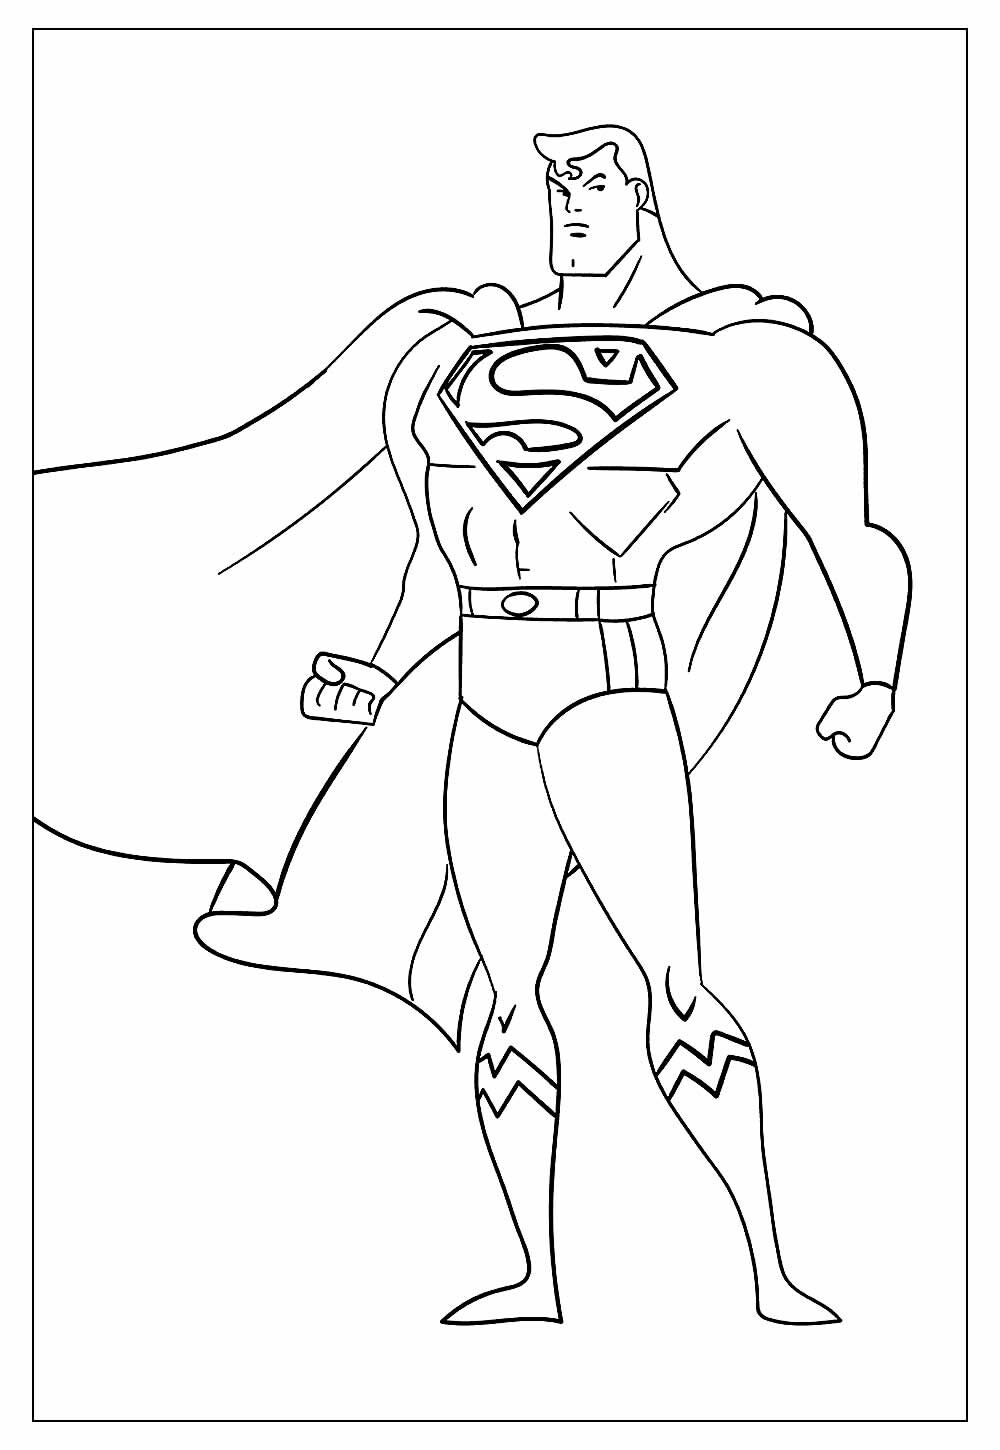 Imagem do Super-Homem para pintar e colorir